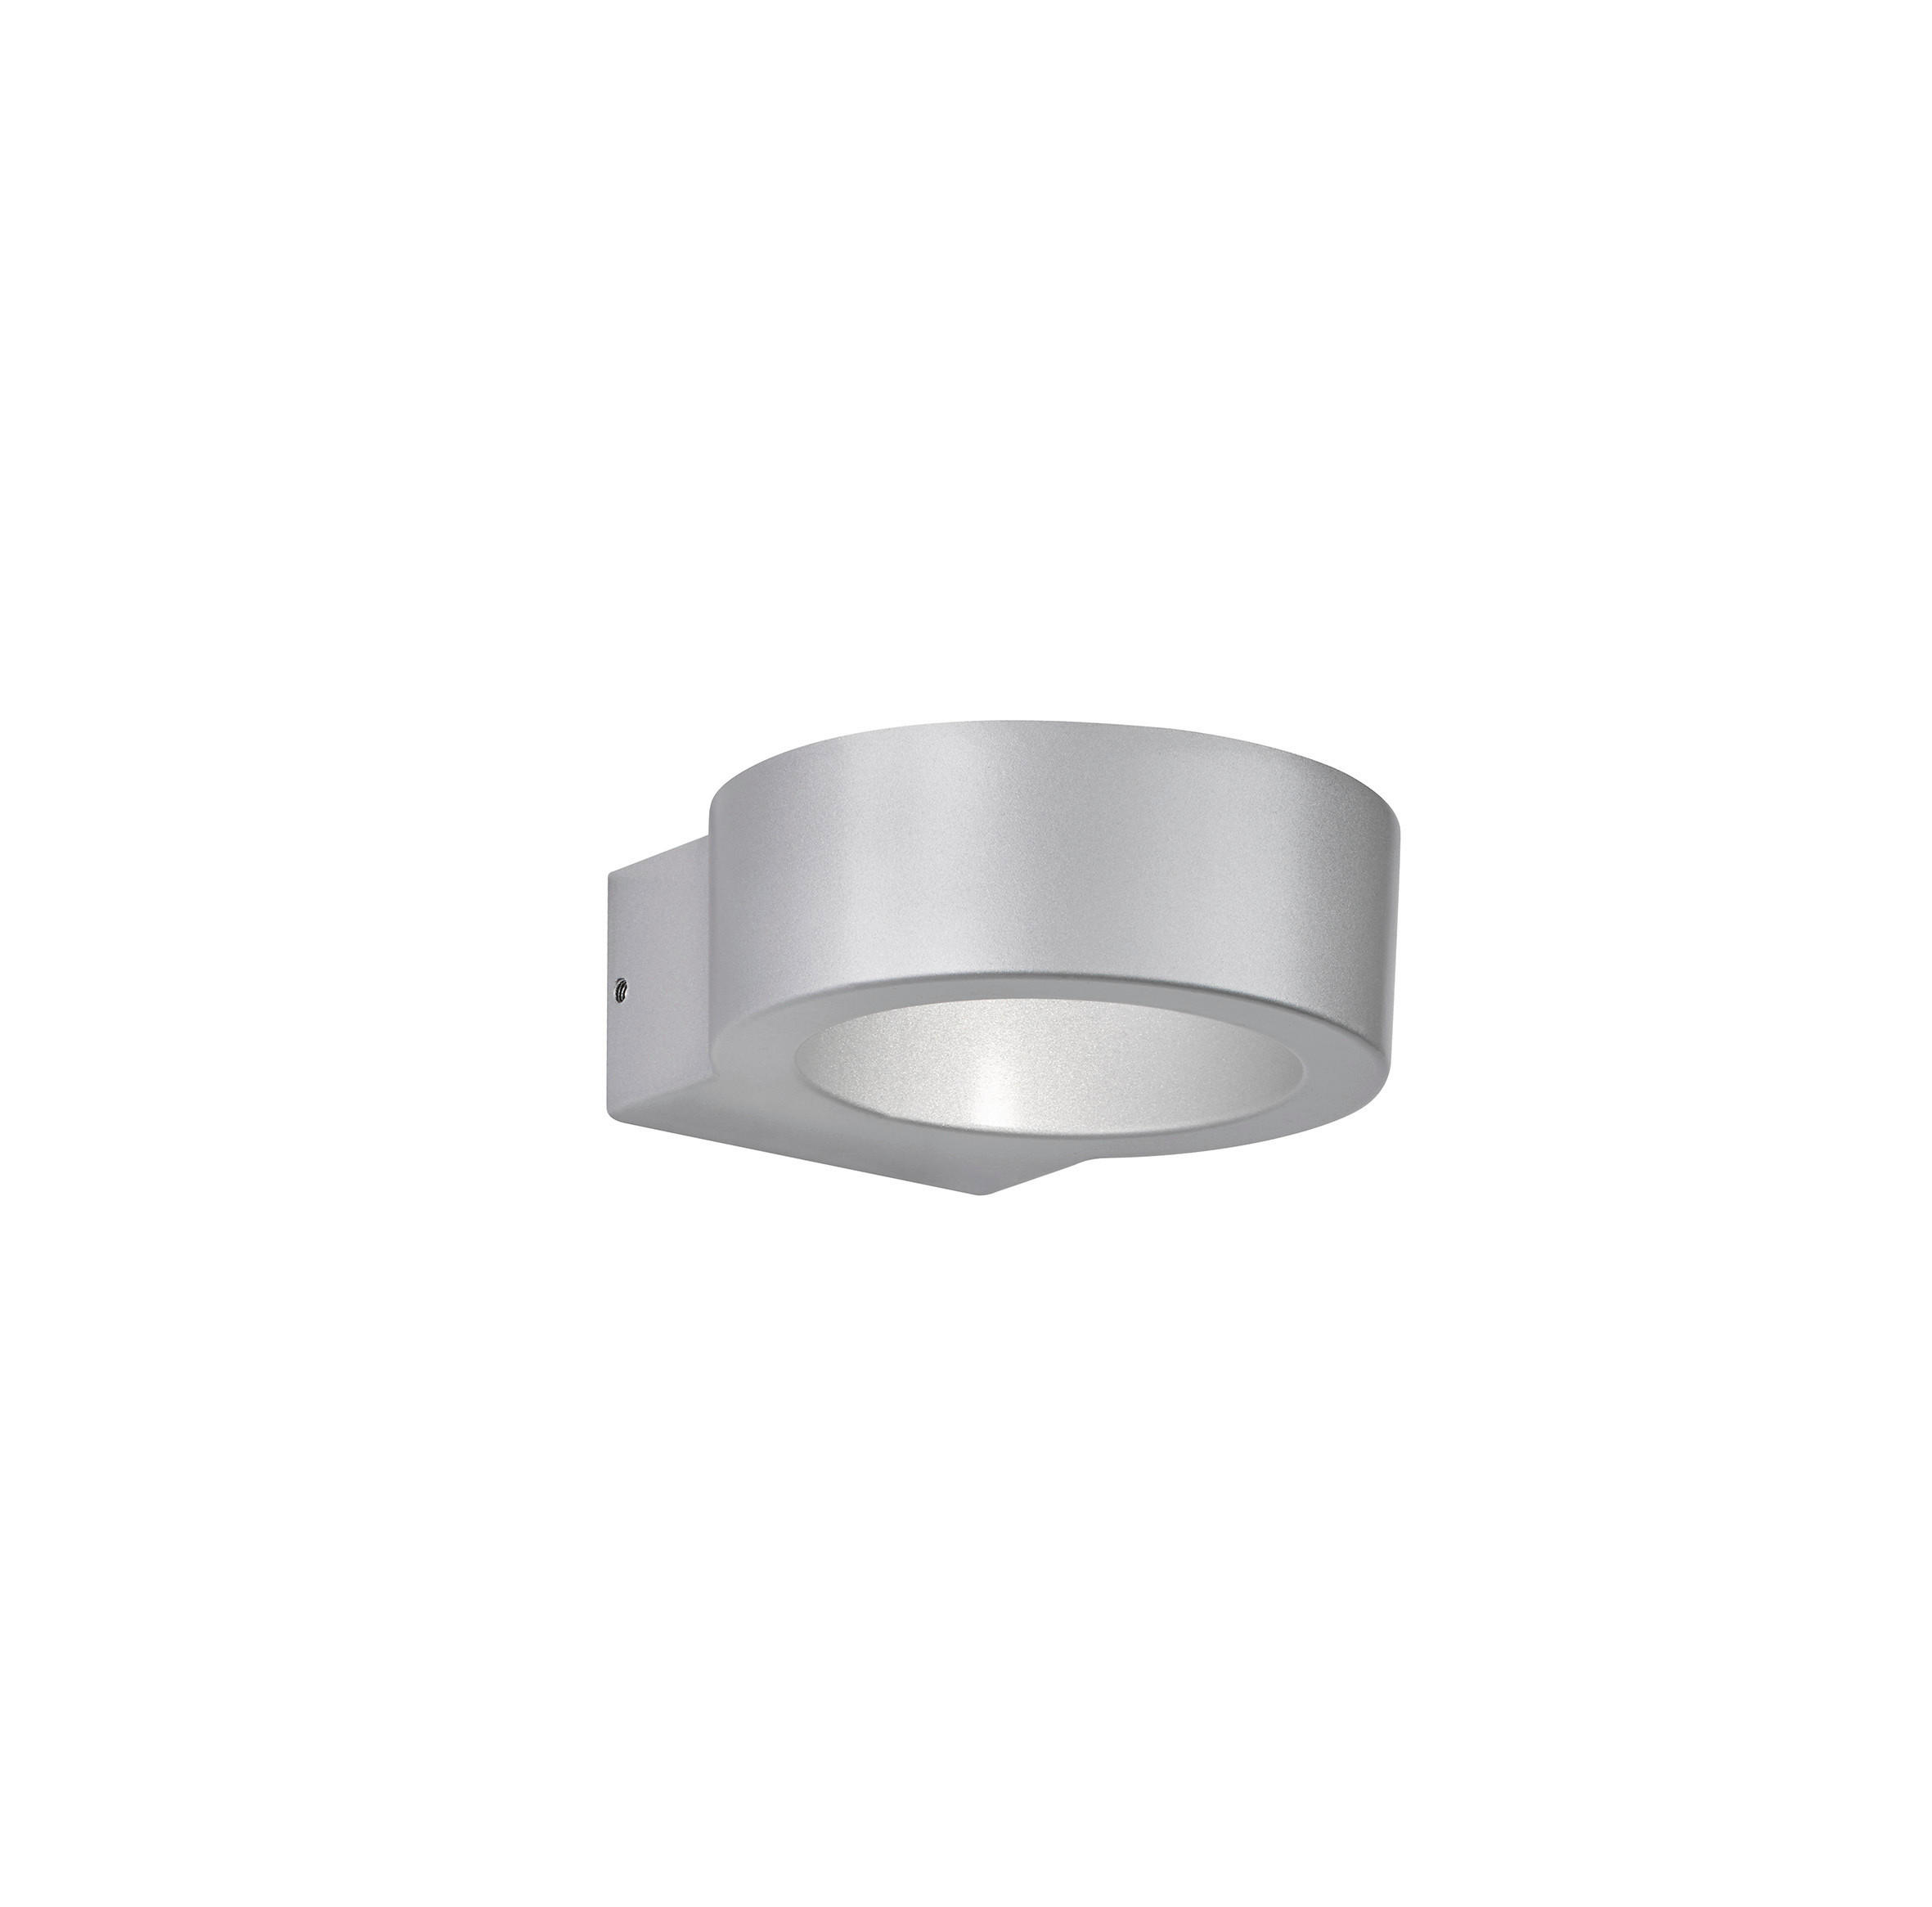 LED-AUßENLEUCHTE   - Silberfarben, Design, Metall (4,5/14,8/12,5cm) - Fischer & Honsel